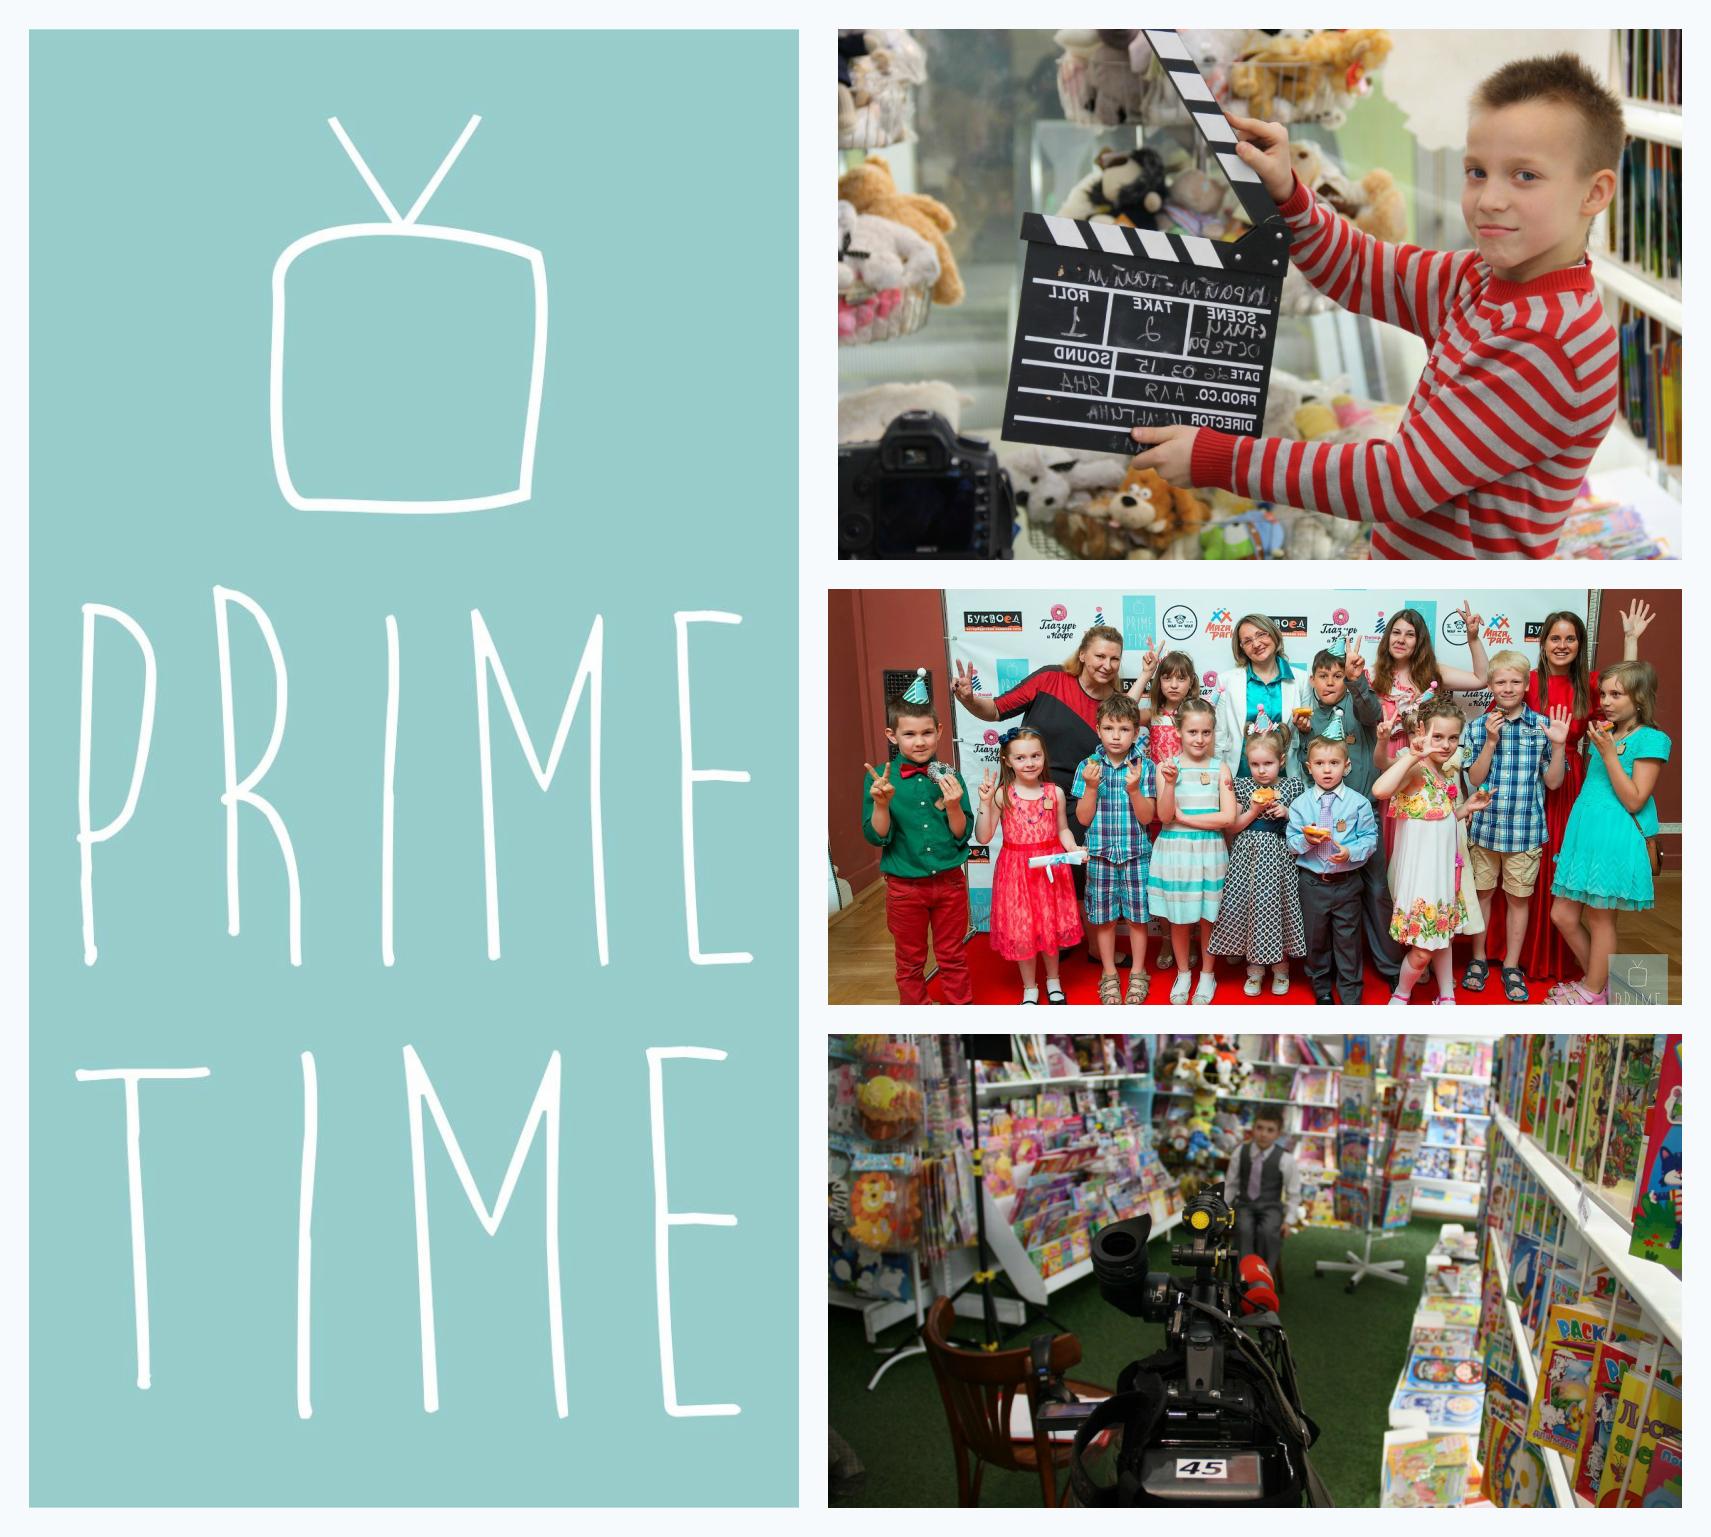 Телешкола Prime Time объявляет кастинг детей для участия в съемках телепроектов